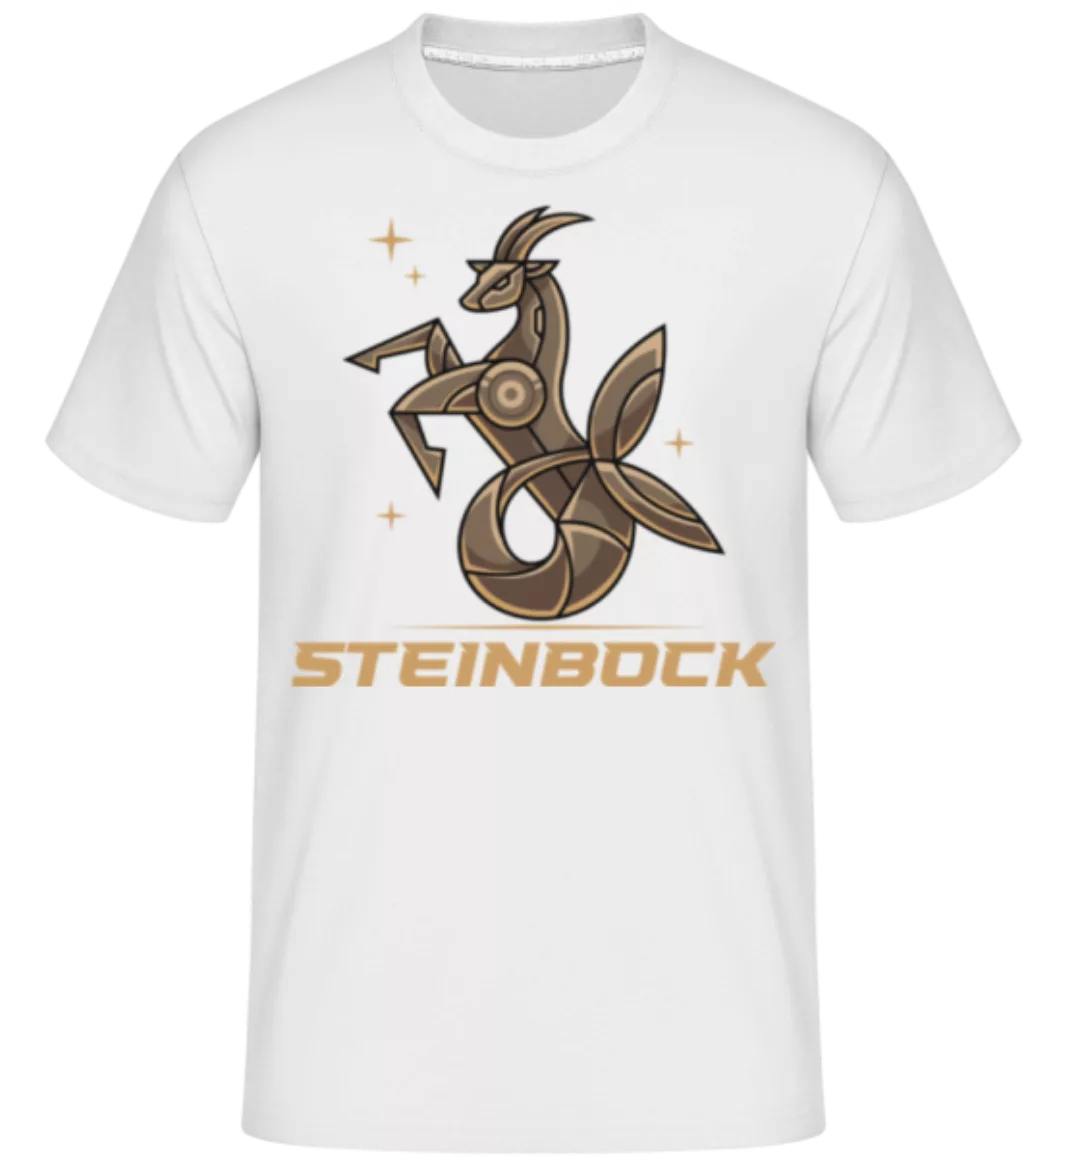 Mecha Roboter Sternzeichen Steinbock · Shirtinator Männer T-Shirt günstig online kaufen